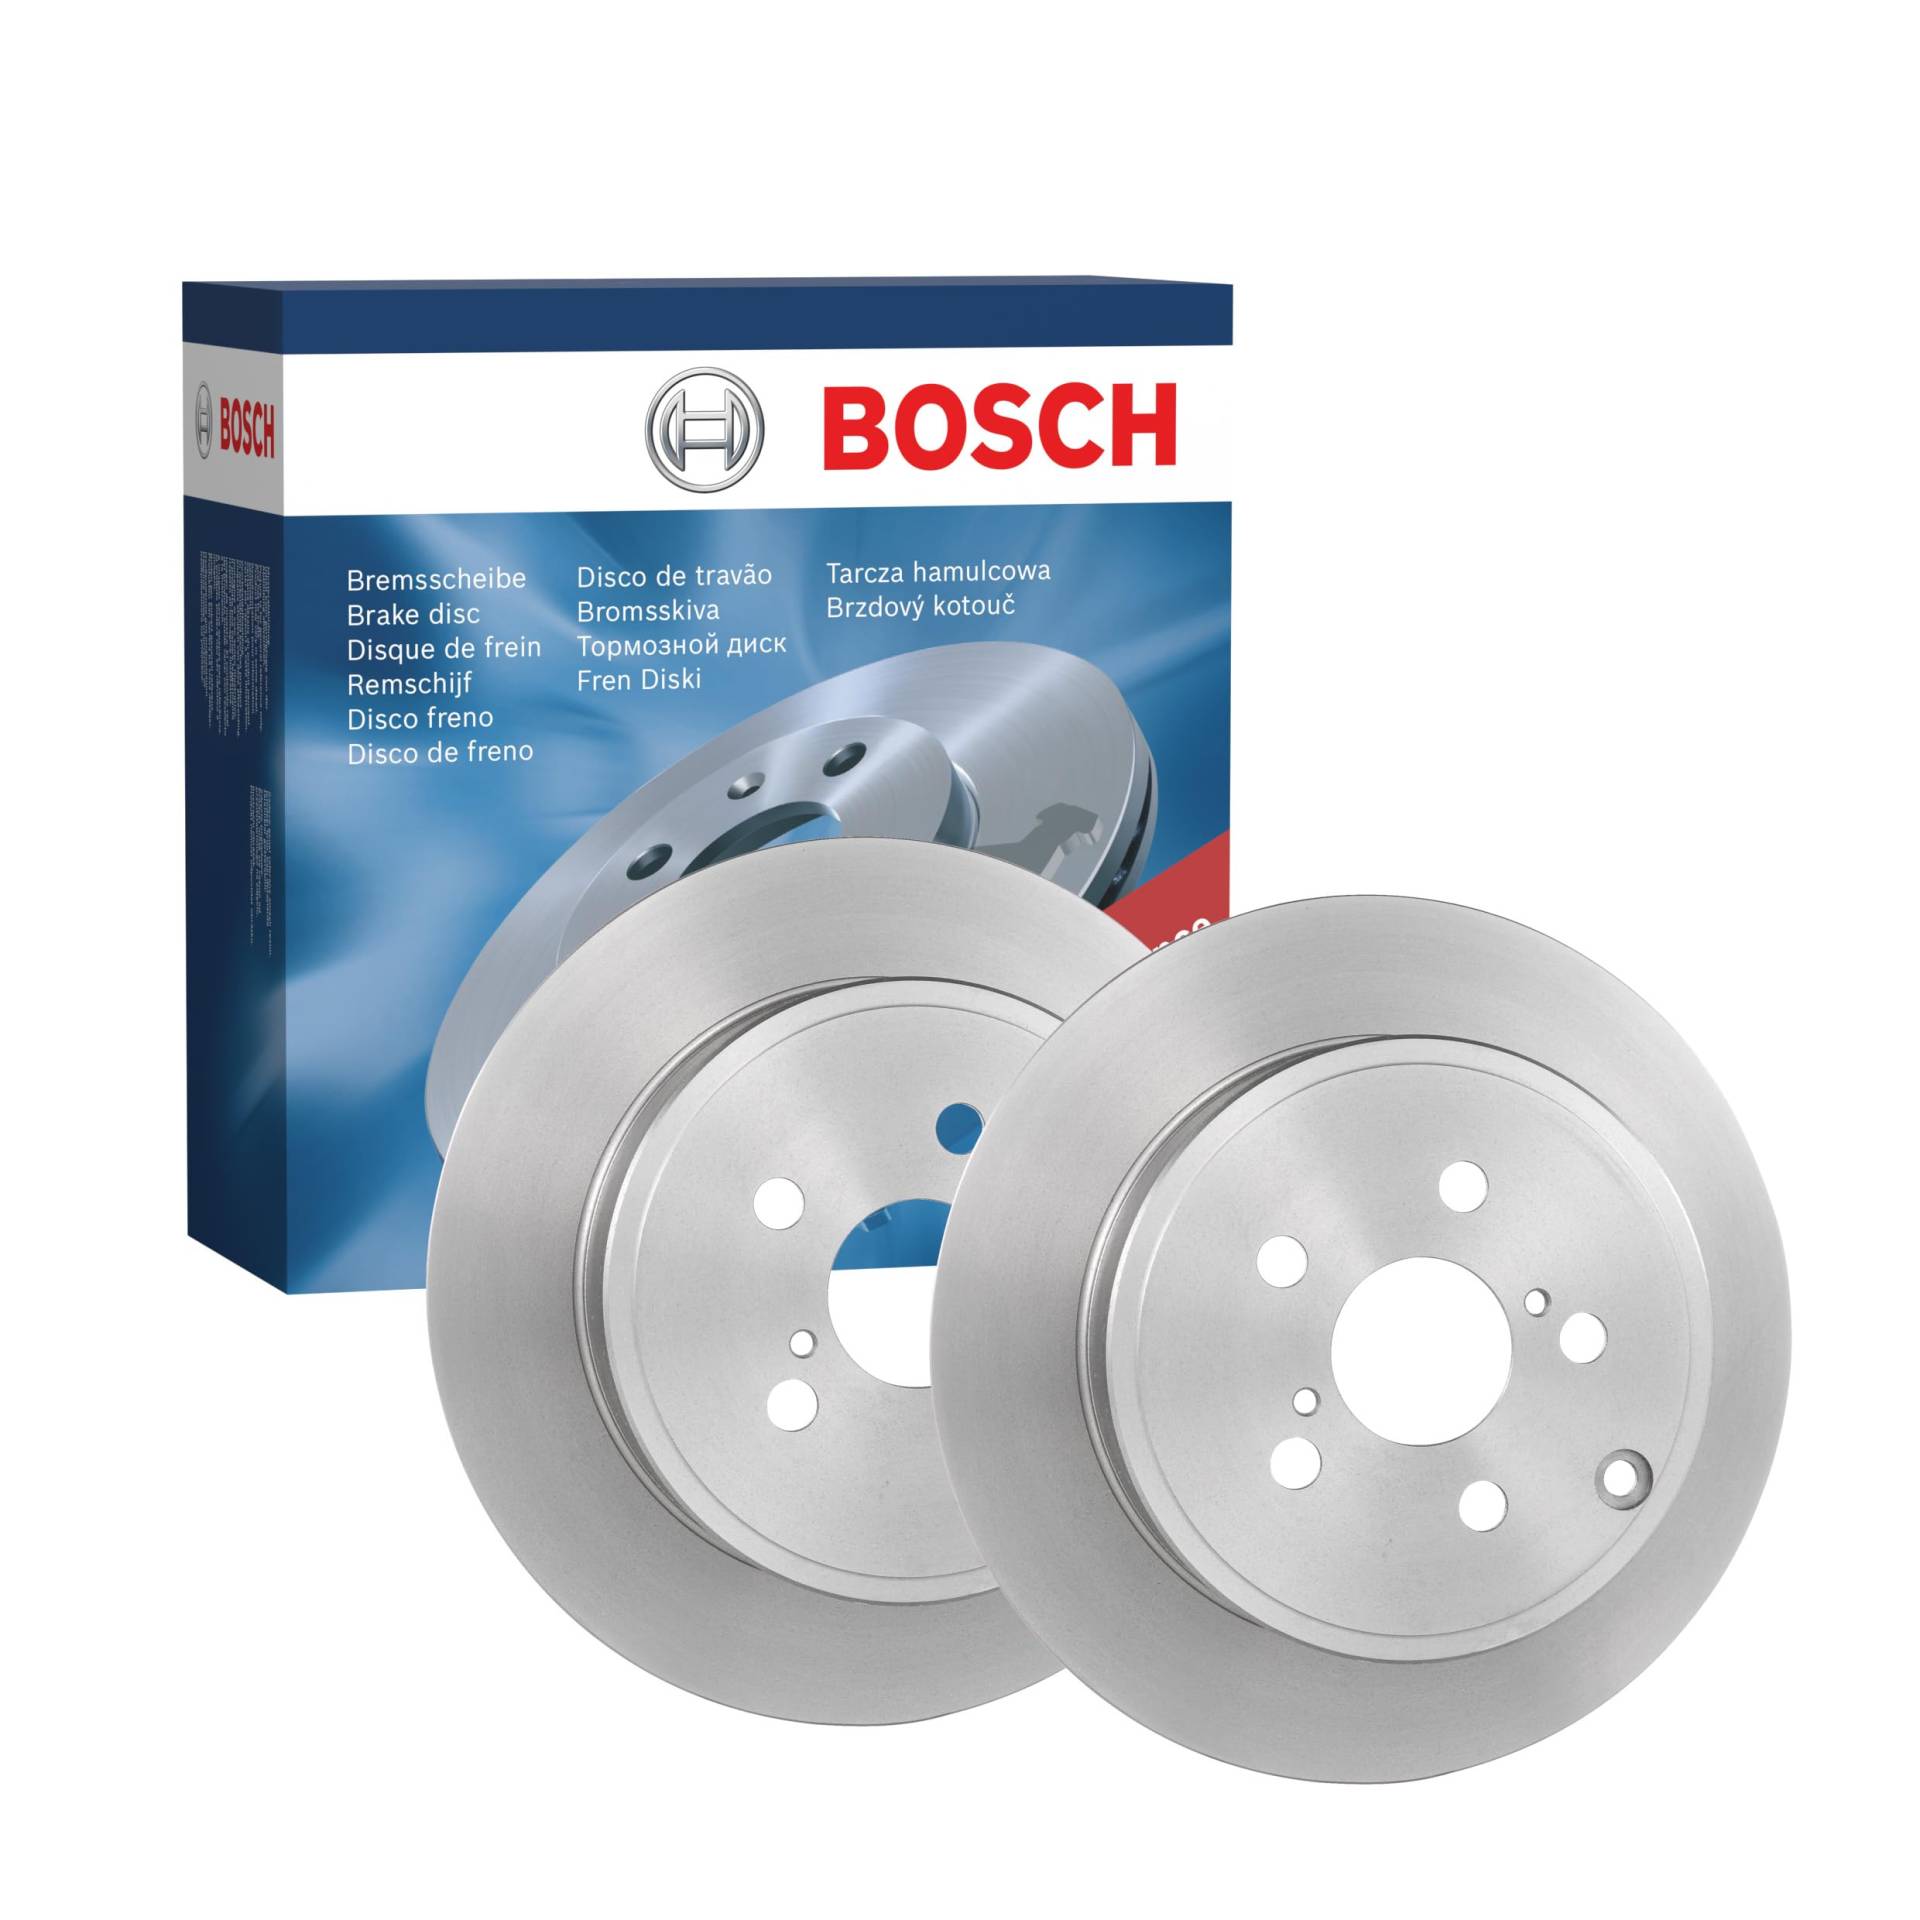 Bosch BD1108 Bremsscheiben - Hinterachse - ECE-R90 Zertifizierung - zwei Bremsscheiben pro Set von Bosch Automotive